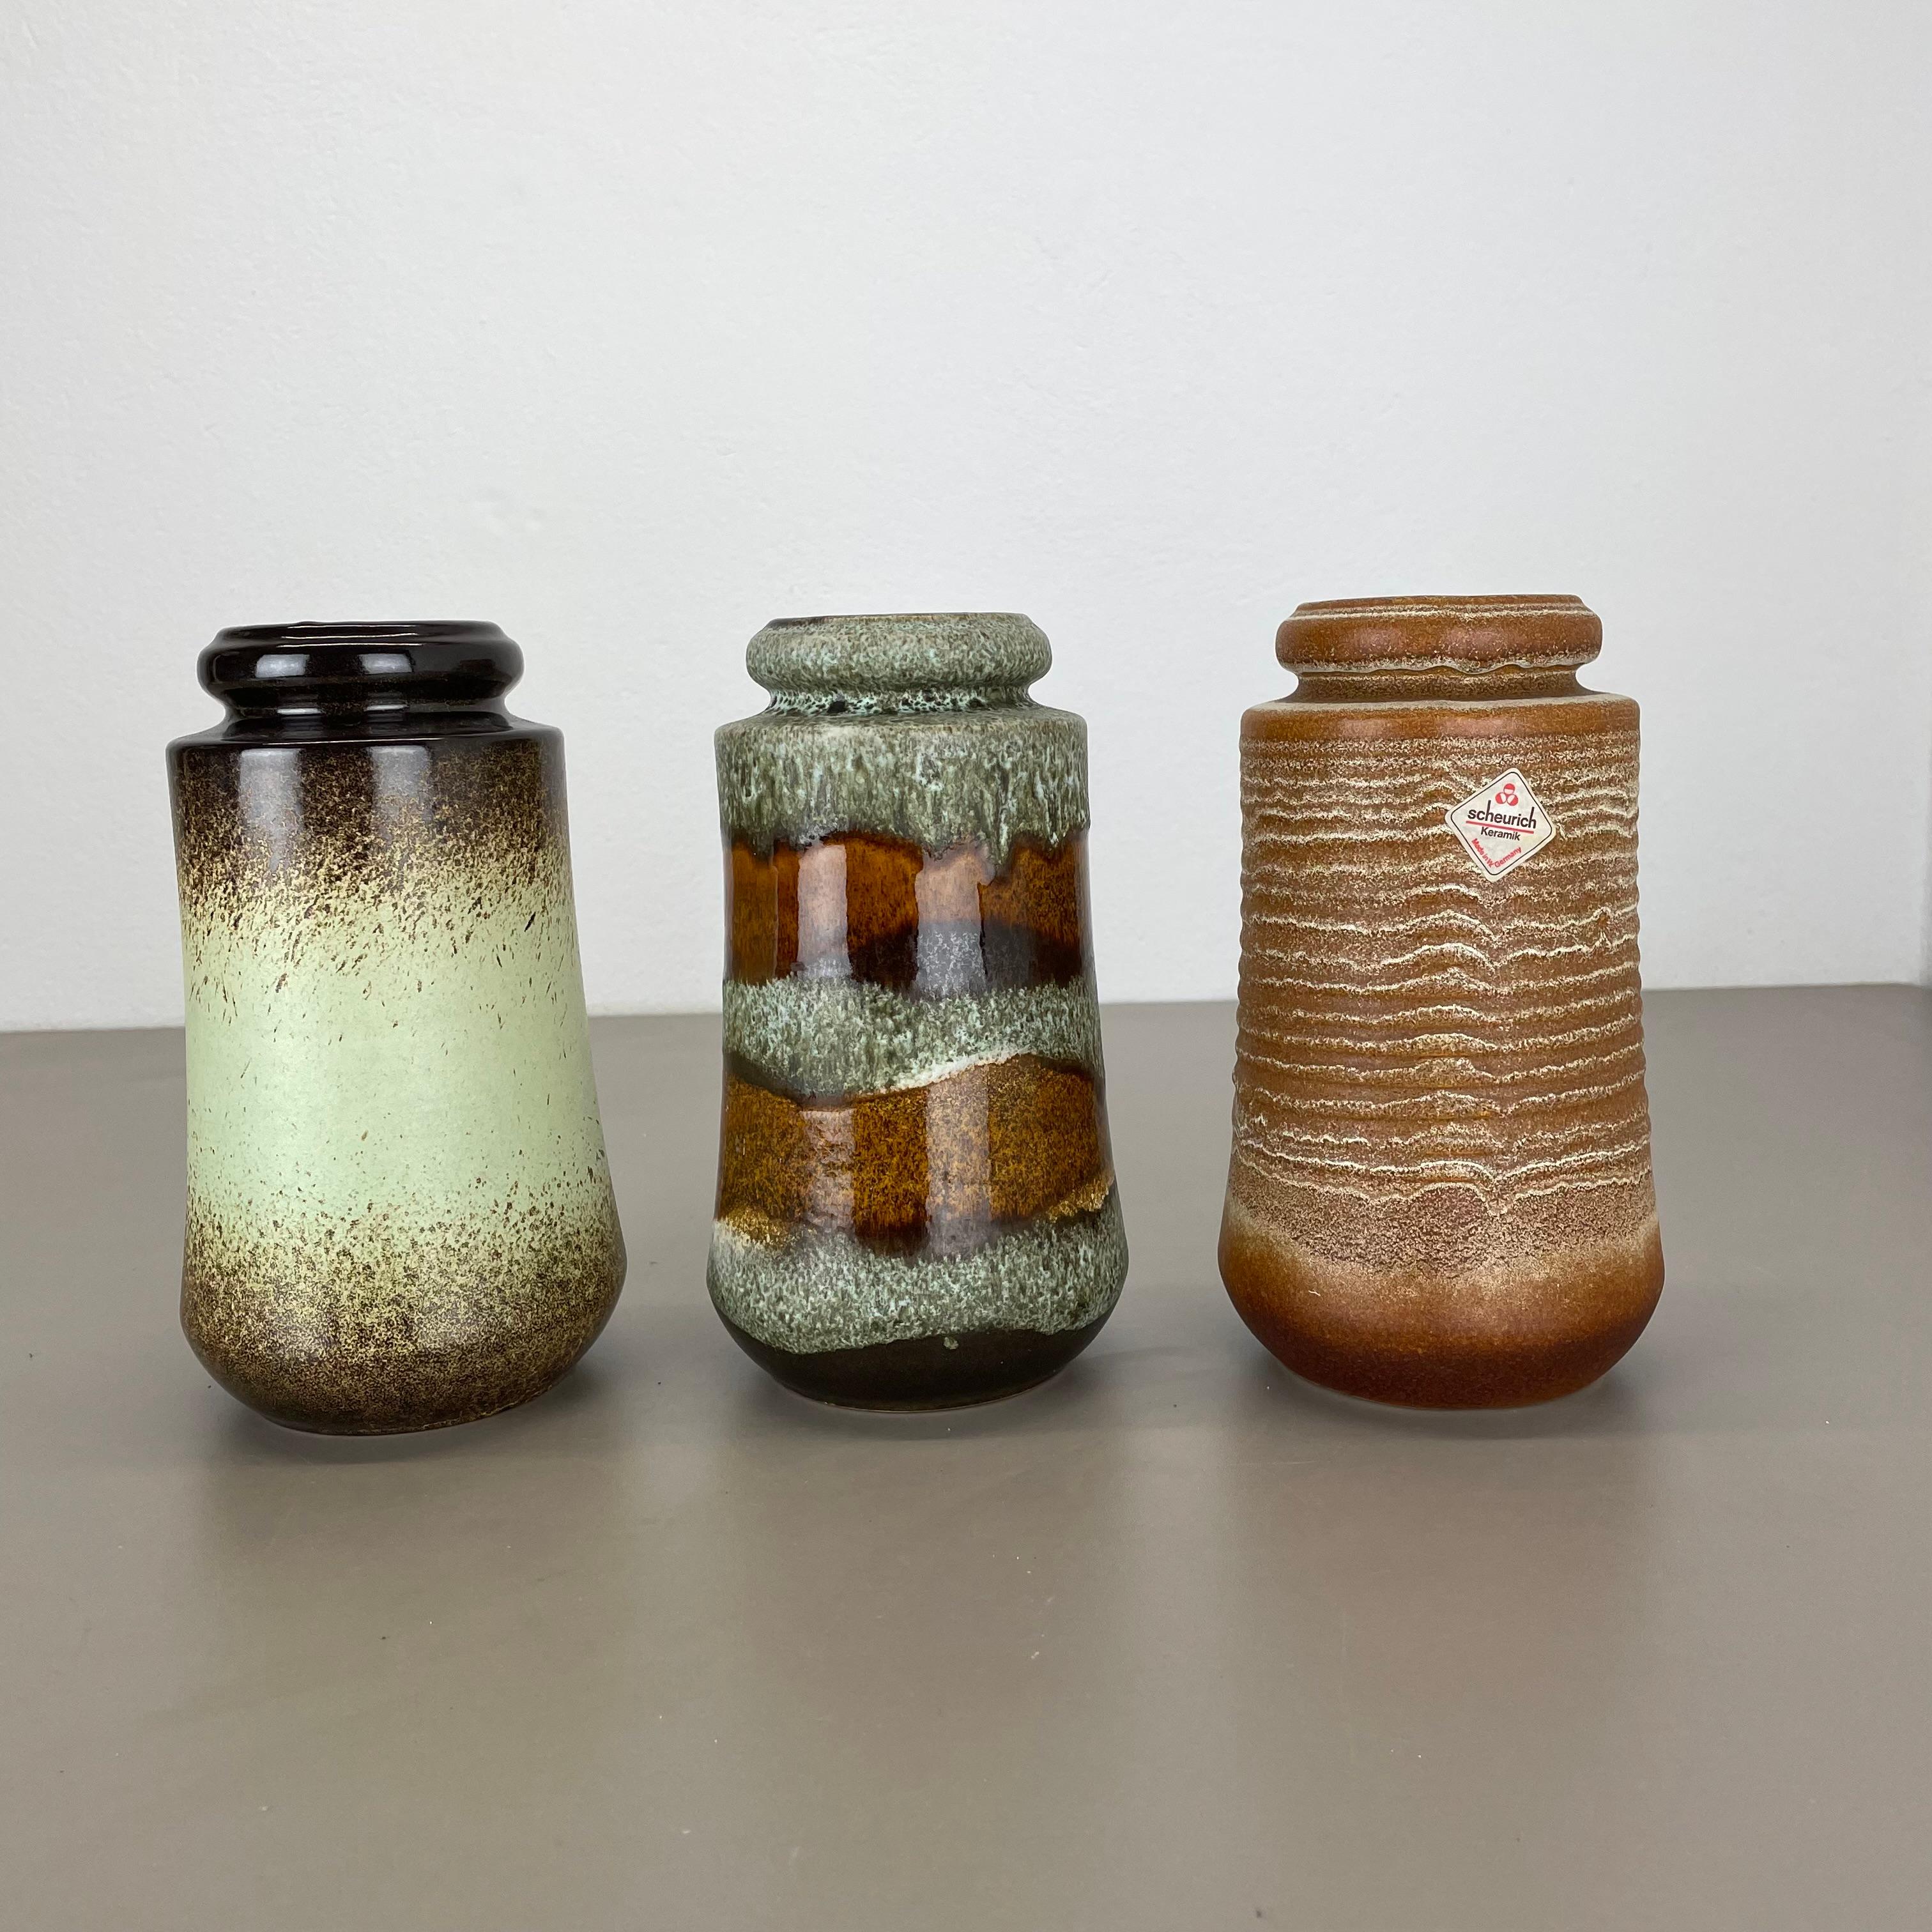 Article :

Ensemble de trois vases d'art en lave grasse


Producteur :

Scheurich, Allemagne



Décennie :

1970s


Ces vases vintage originaux ont été produits dans les années 1970 en Allemagne. Il est réalisé en poterie céramique en optique de